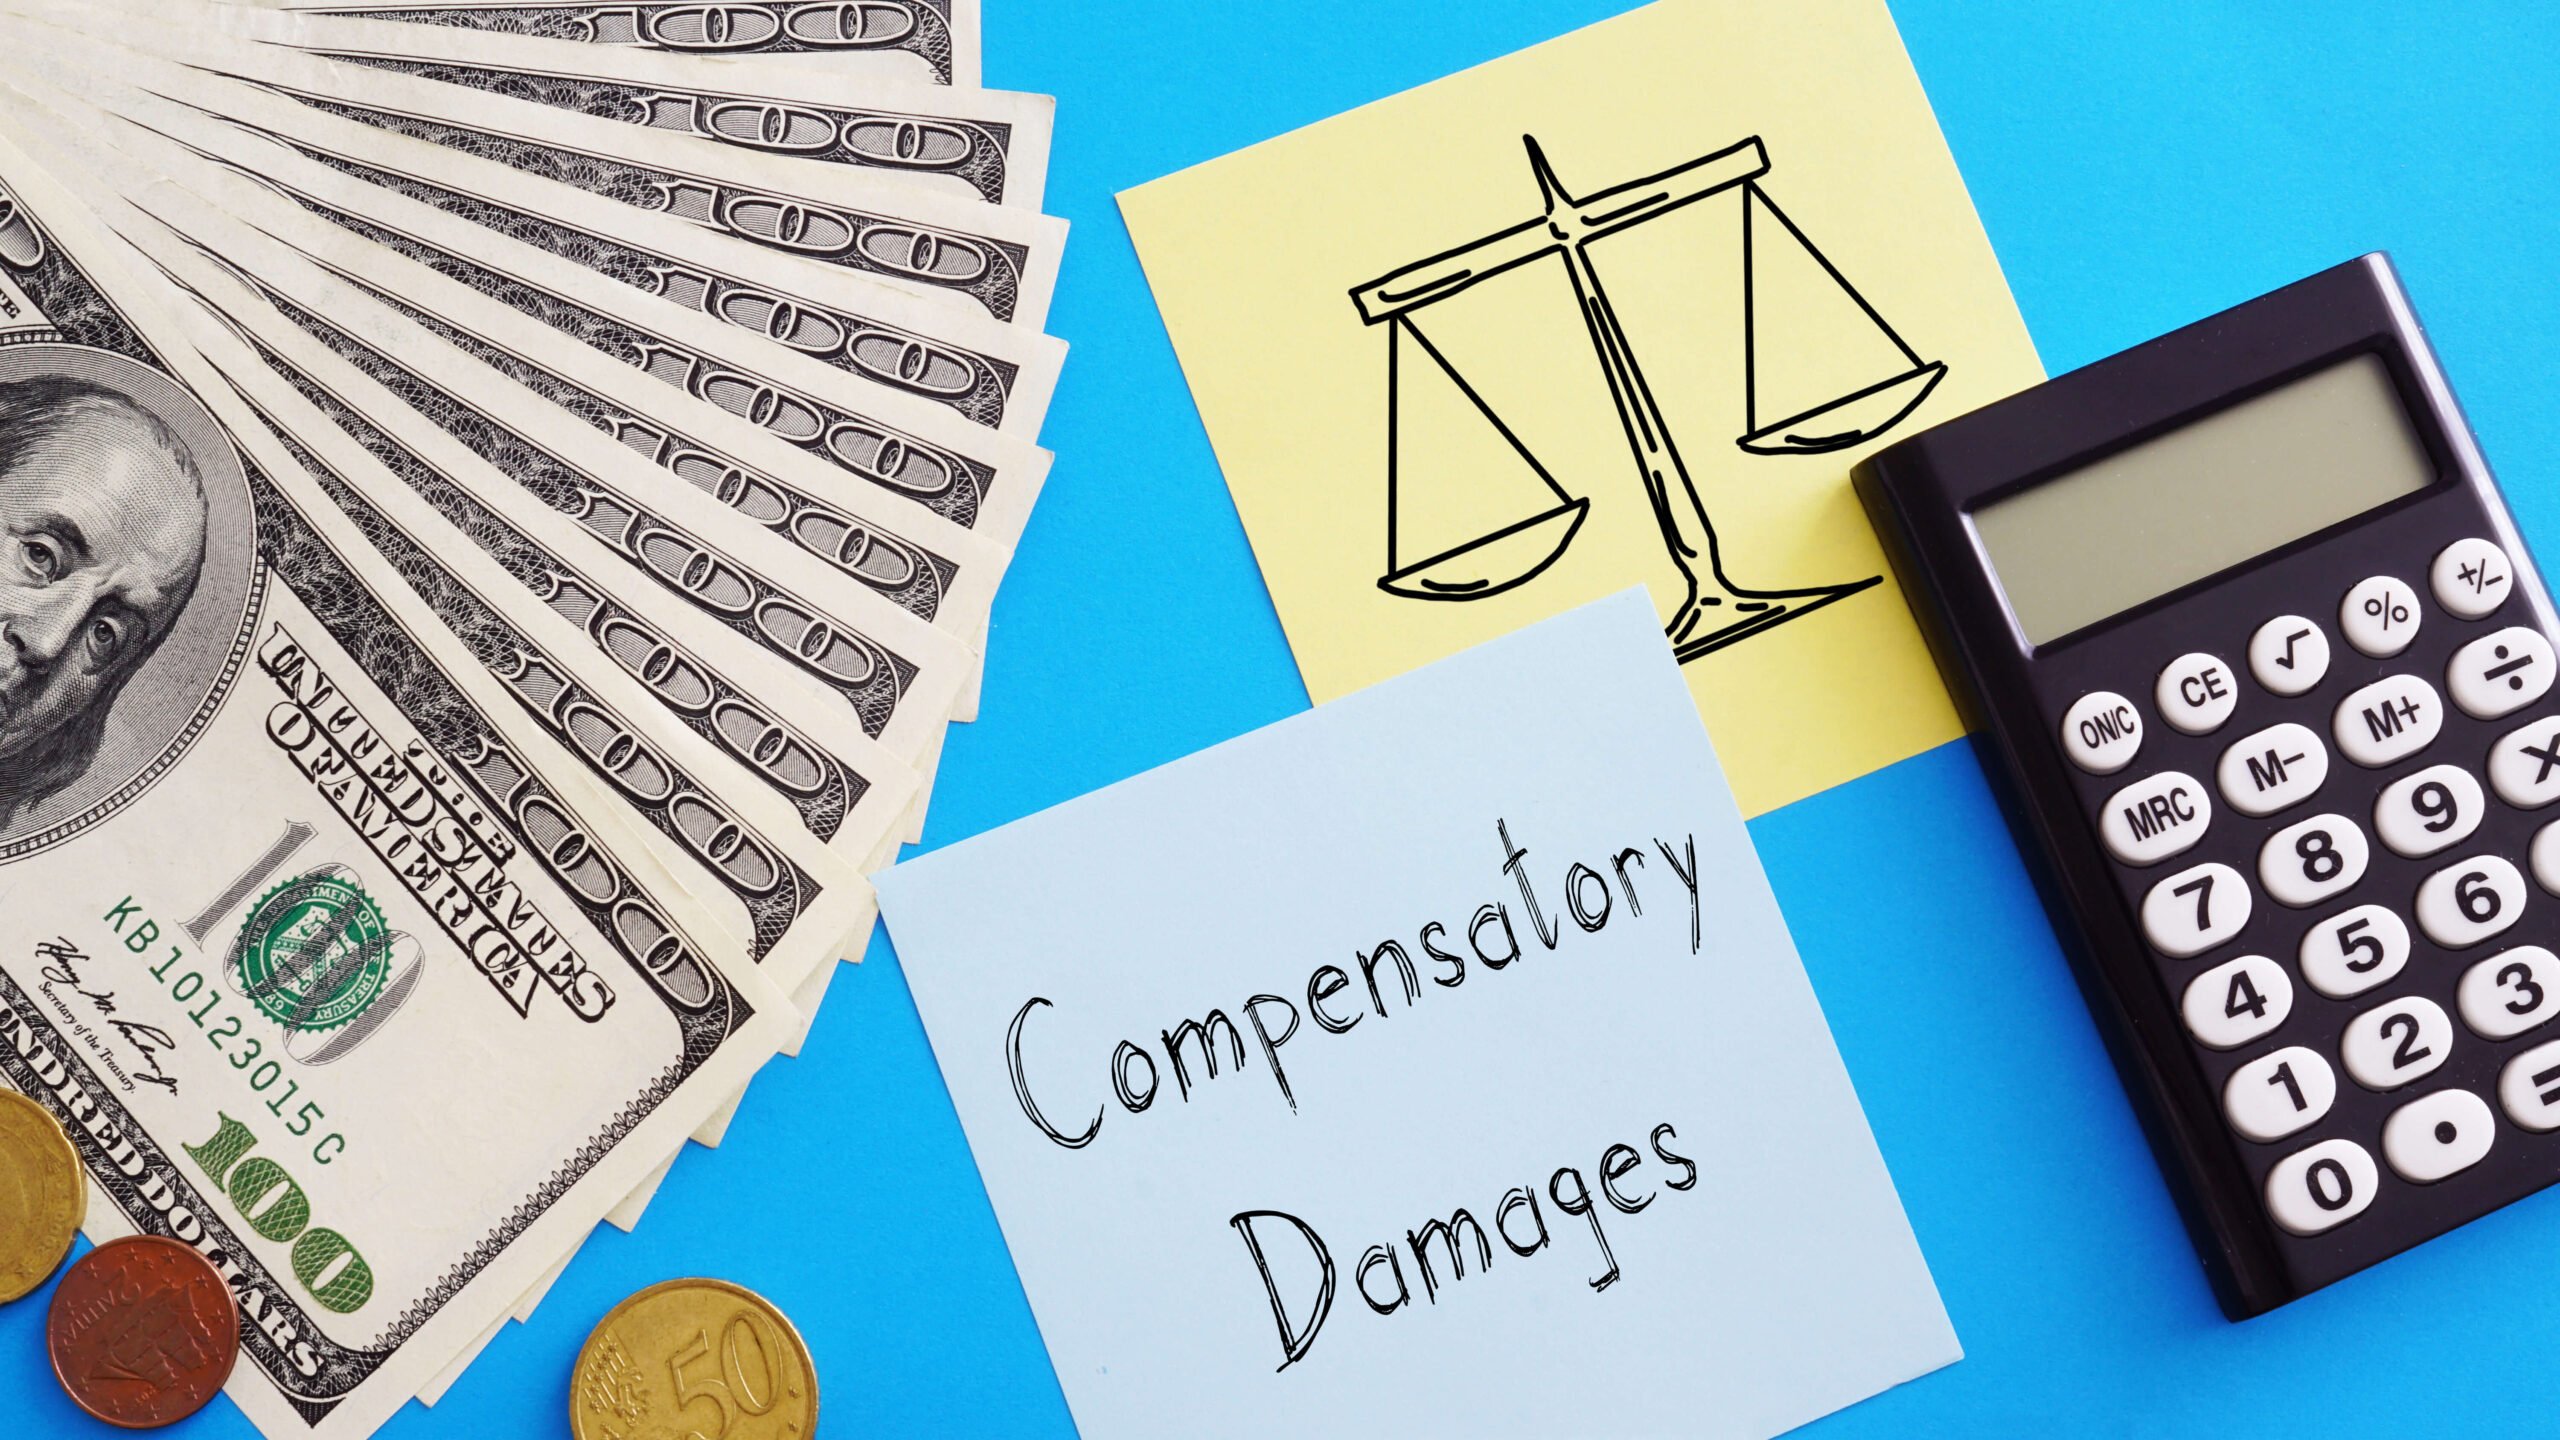 Compensatory damages